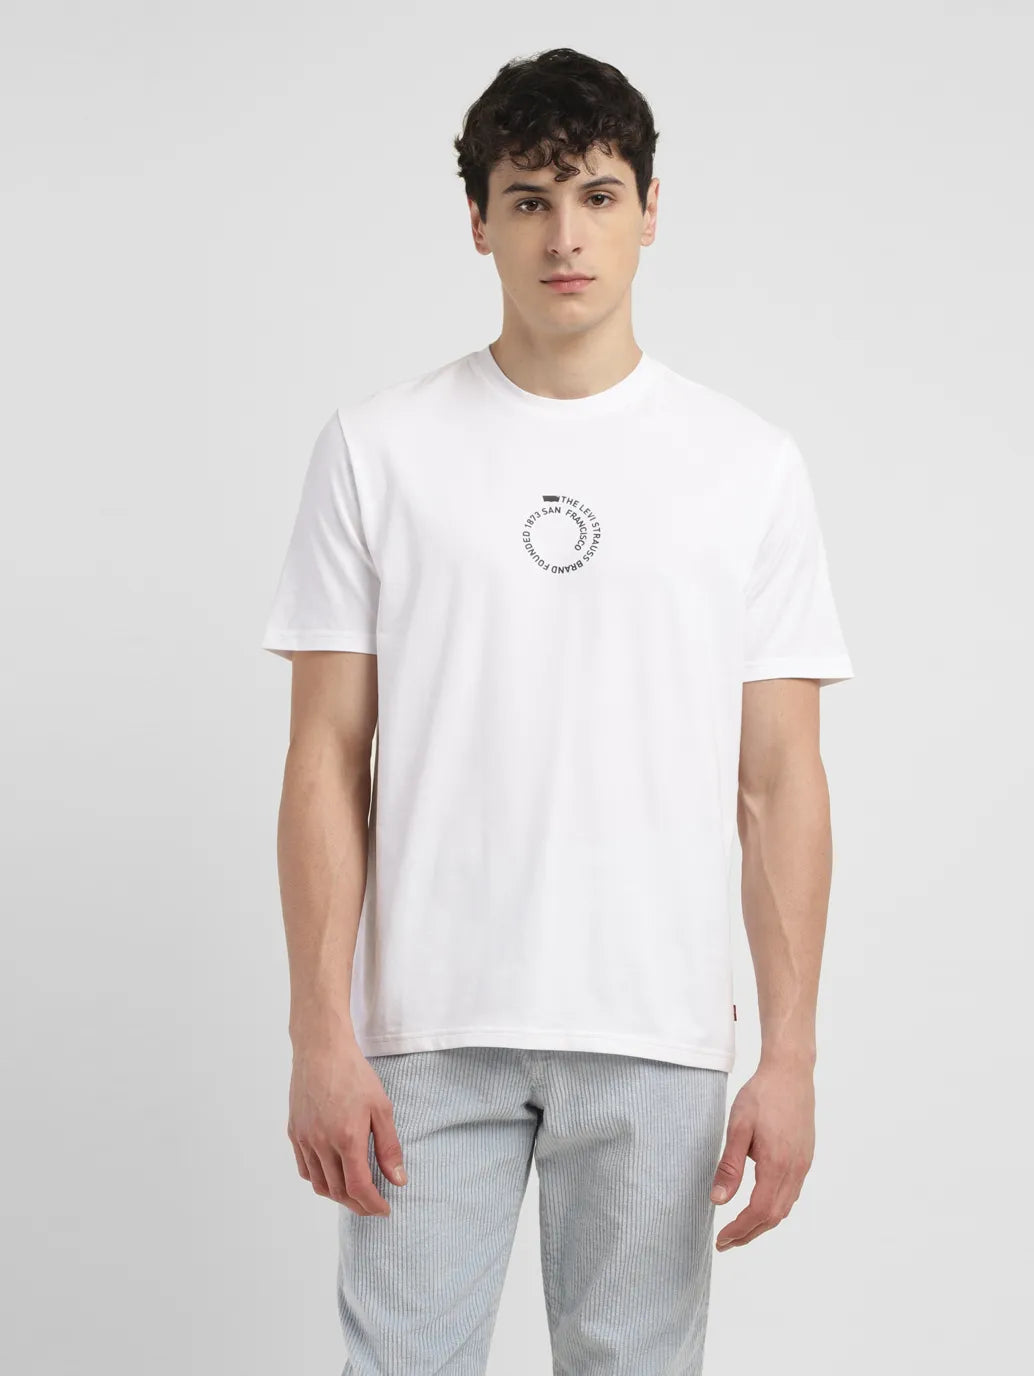 Men's Typographic Print Crew Neck T-shirt